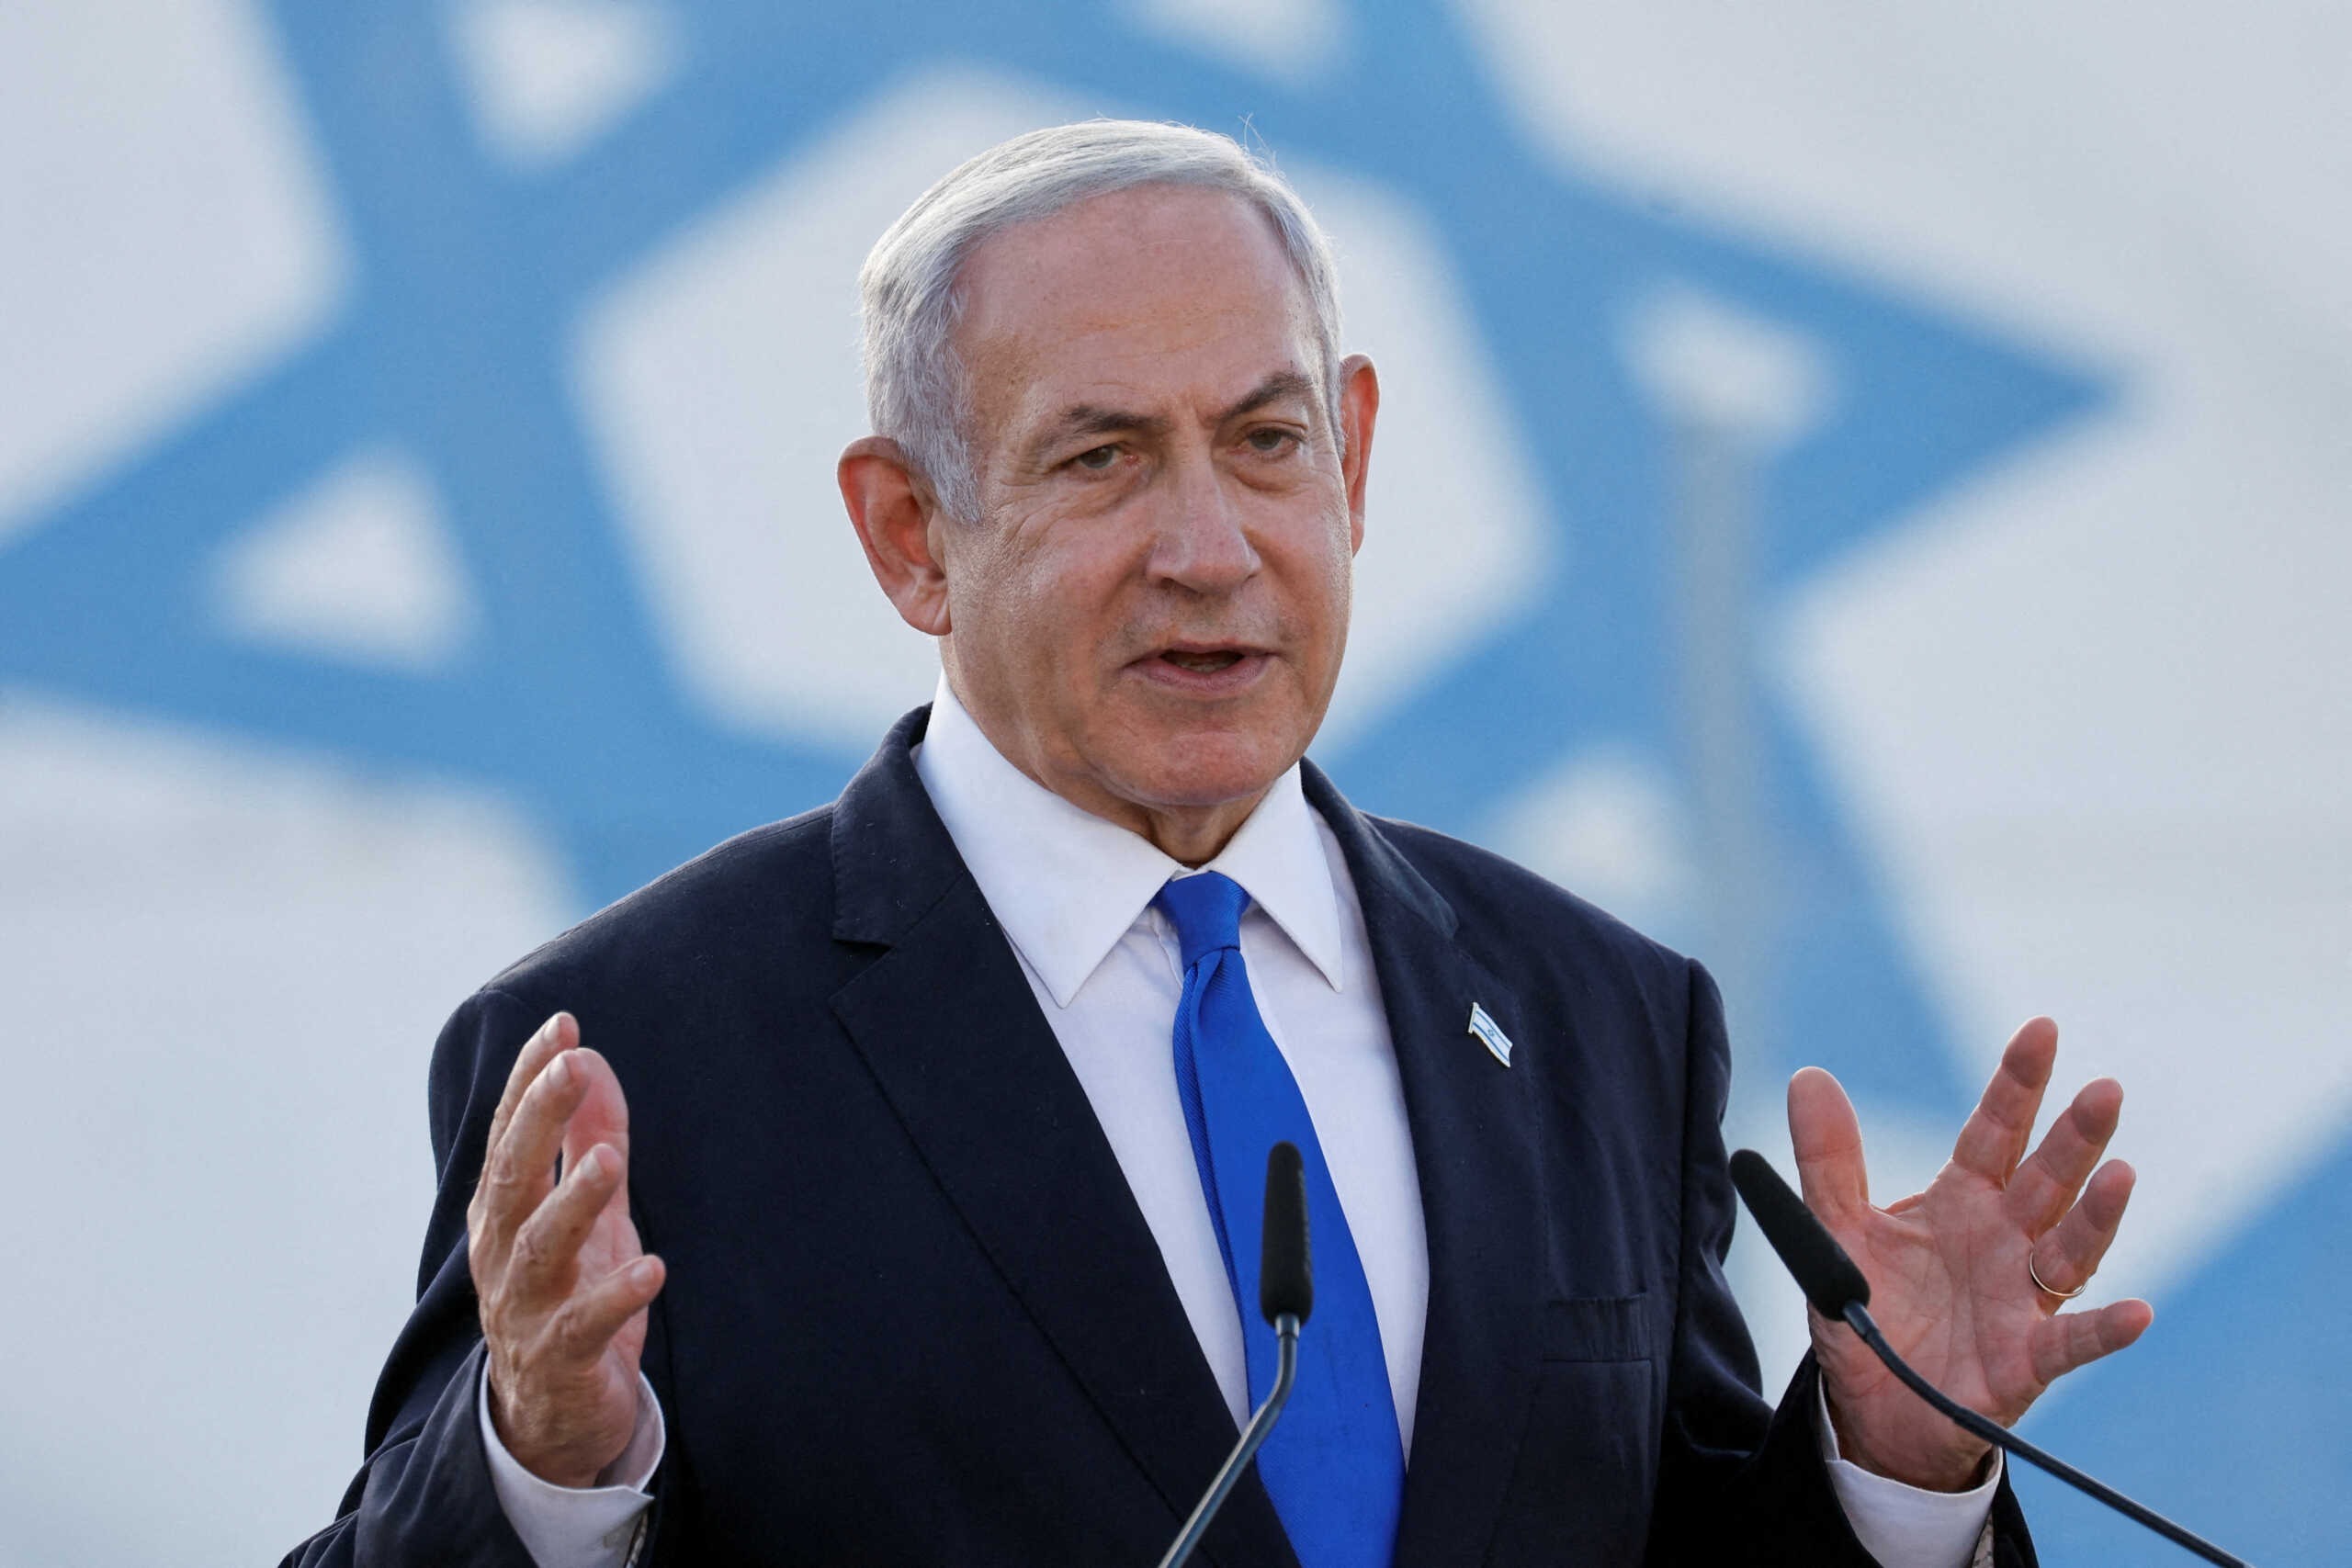 Νετανιάχου: «Ο πόλεμος θα συνεχιστεί» λέει ο Ισραηλινός πρωθυπουργός που στέλνει μηνύματα προς πάσα κατεύθυνση